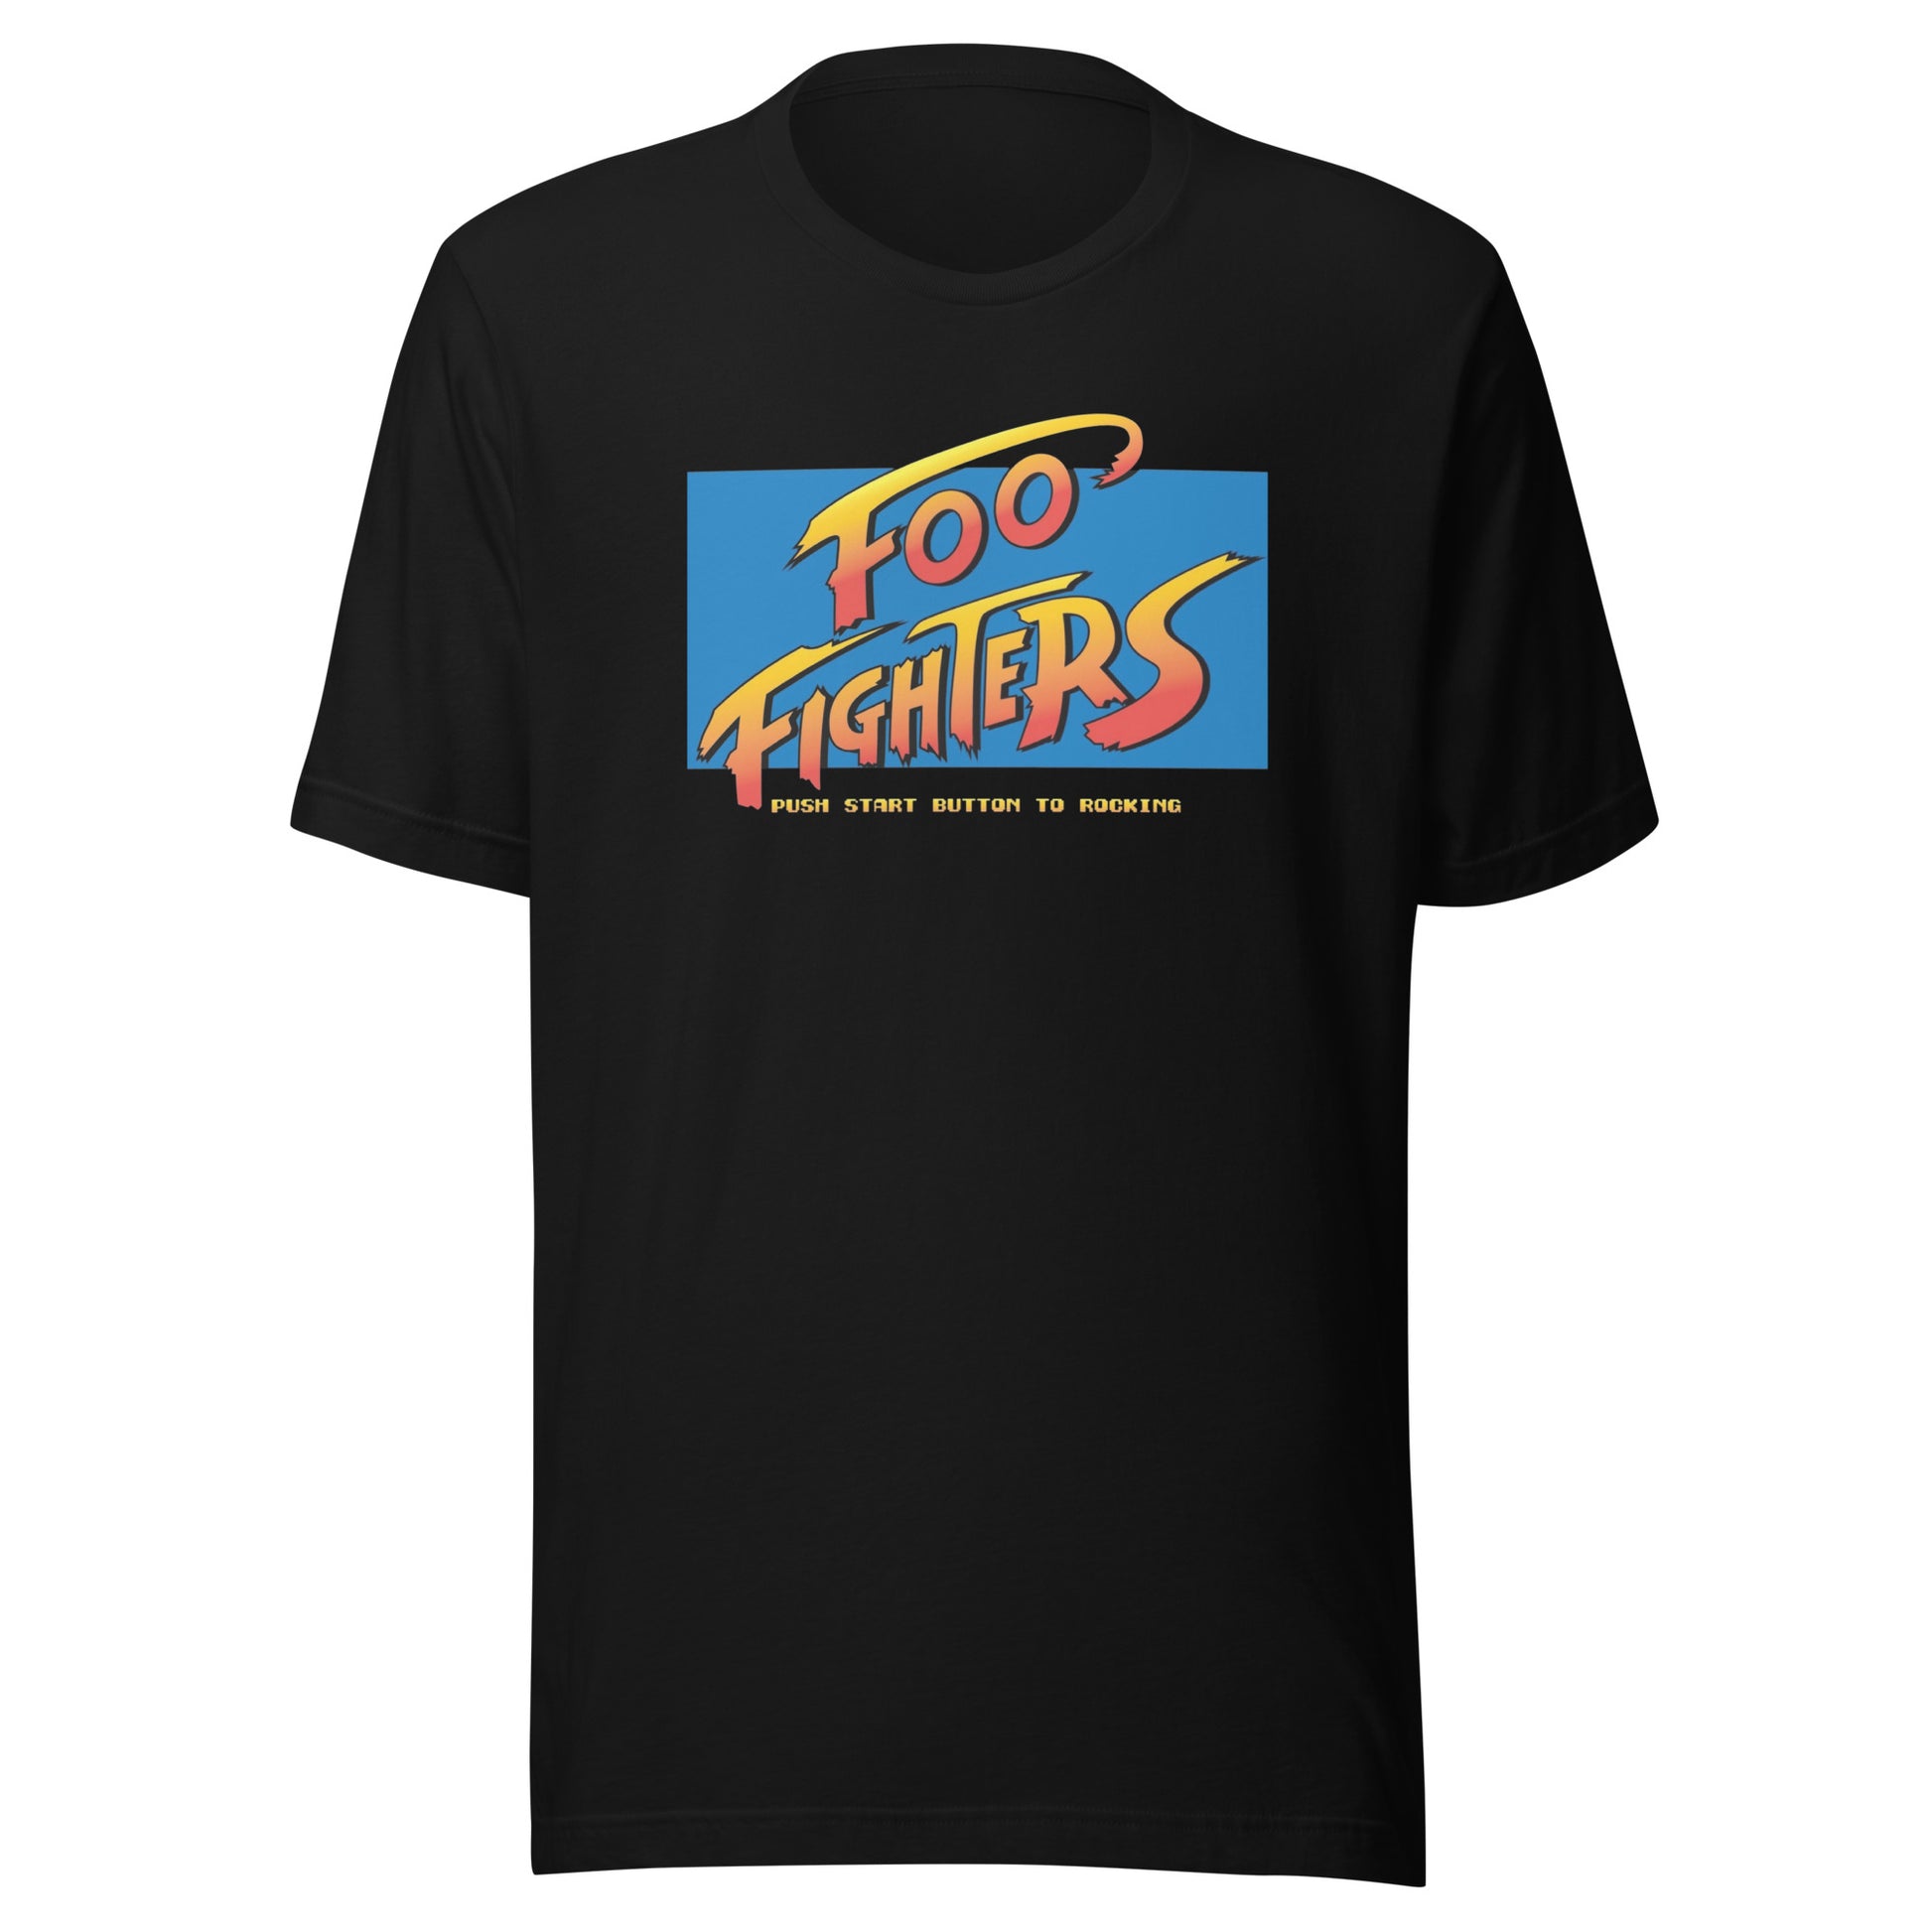 Playera Street Foo Fighters la encuentras en Superstar, vístete como un verdadero #Rockstar y encuentra tu estilo en nuestra tienda Online.\